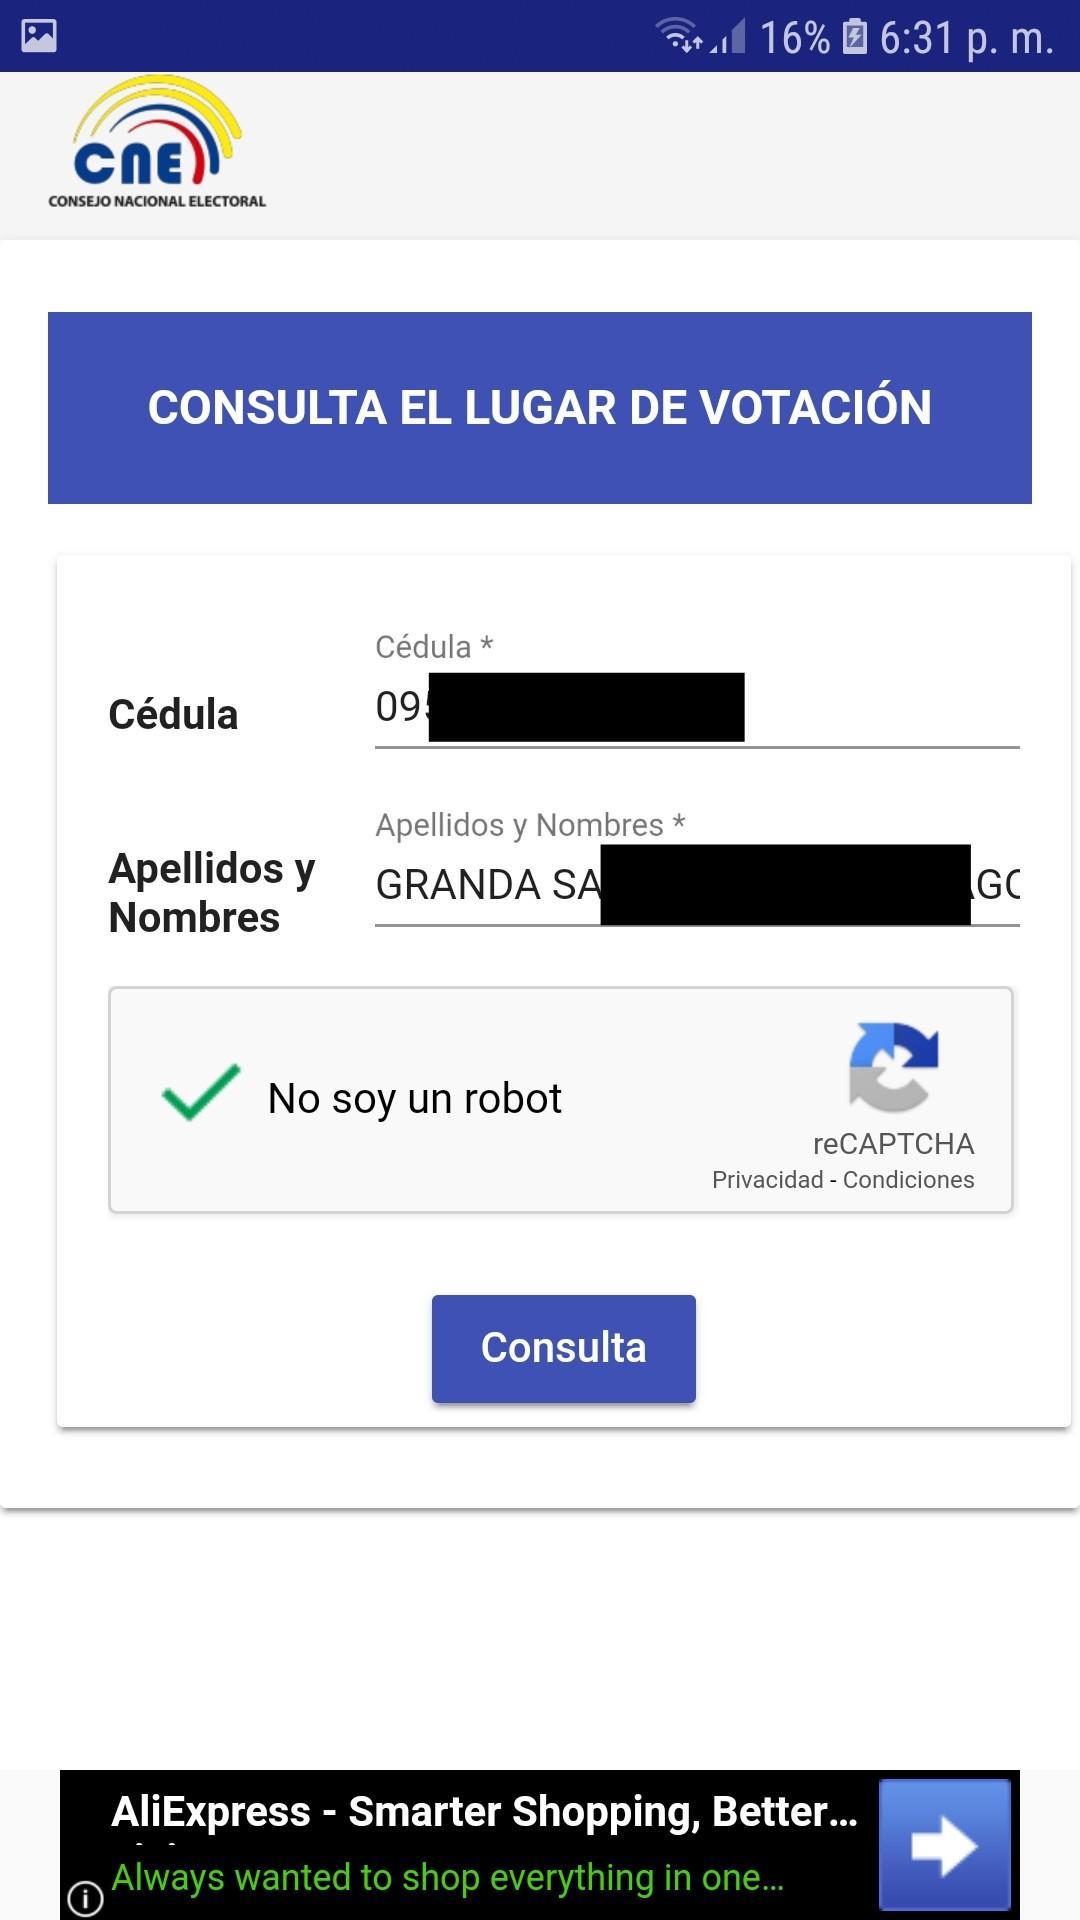 Cne Ecuador Lugar De Votaciones For Android Apk Download